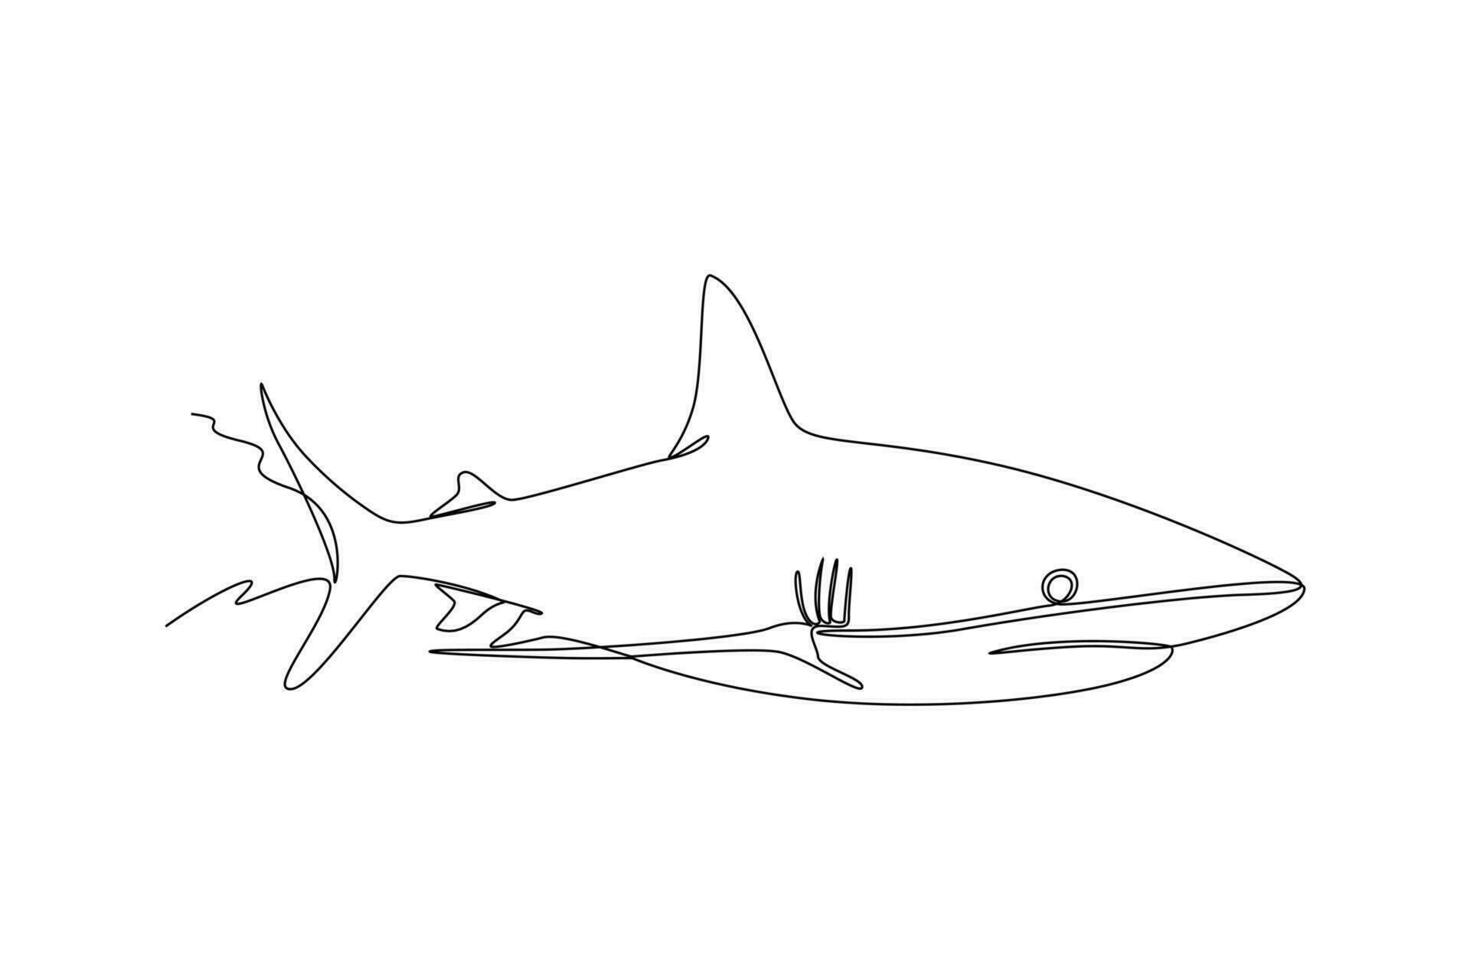 solteiro 1 linha desenhando peixe e selvagem marinho animais conceito. contínuo linha desenhar Projeto gráfico vetor ilustração.